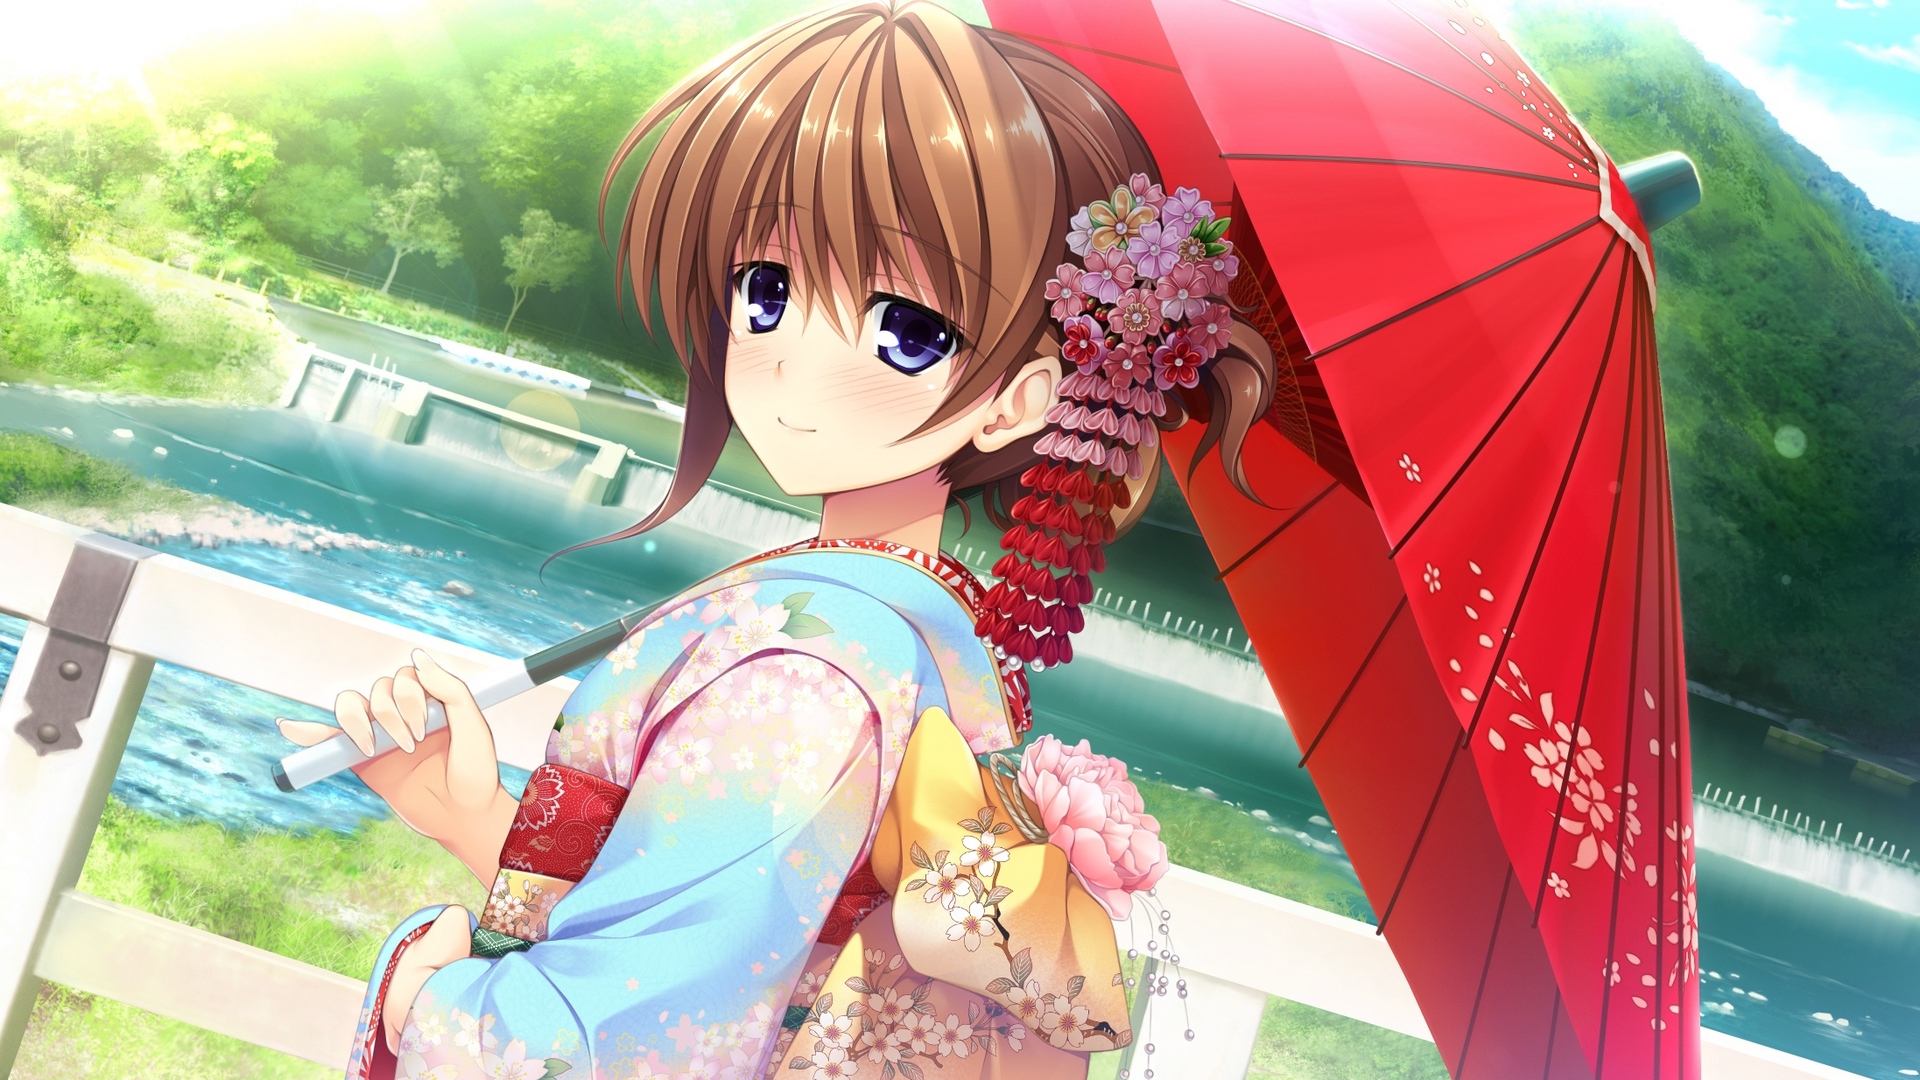 Wallpaper Girl, Japan, Umbrella, Kimono - Pretty Cation 2 The Animation 2 - HD Wallpaper 